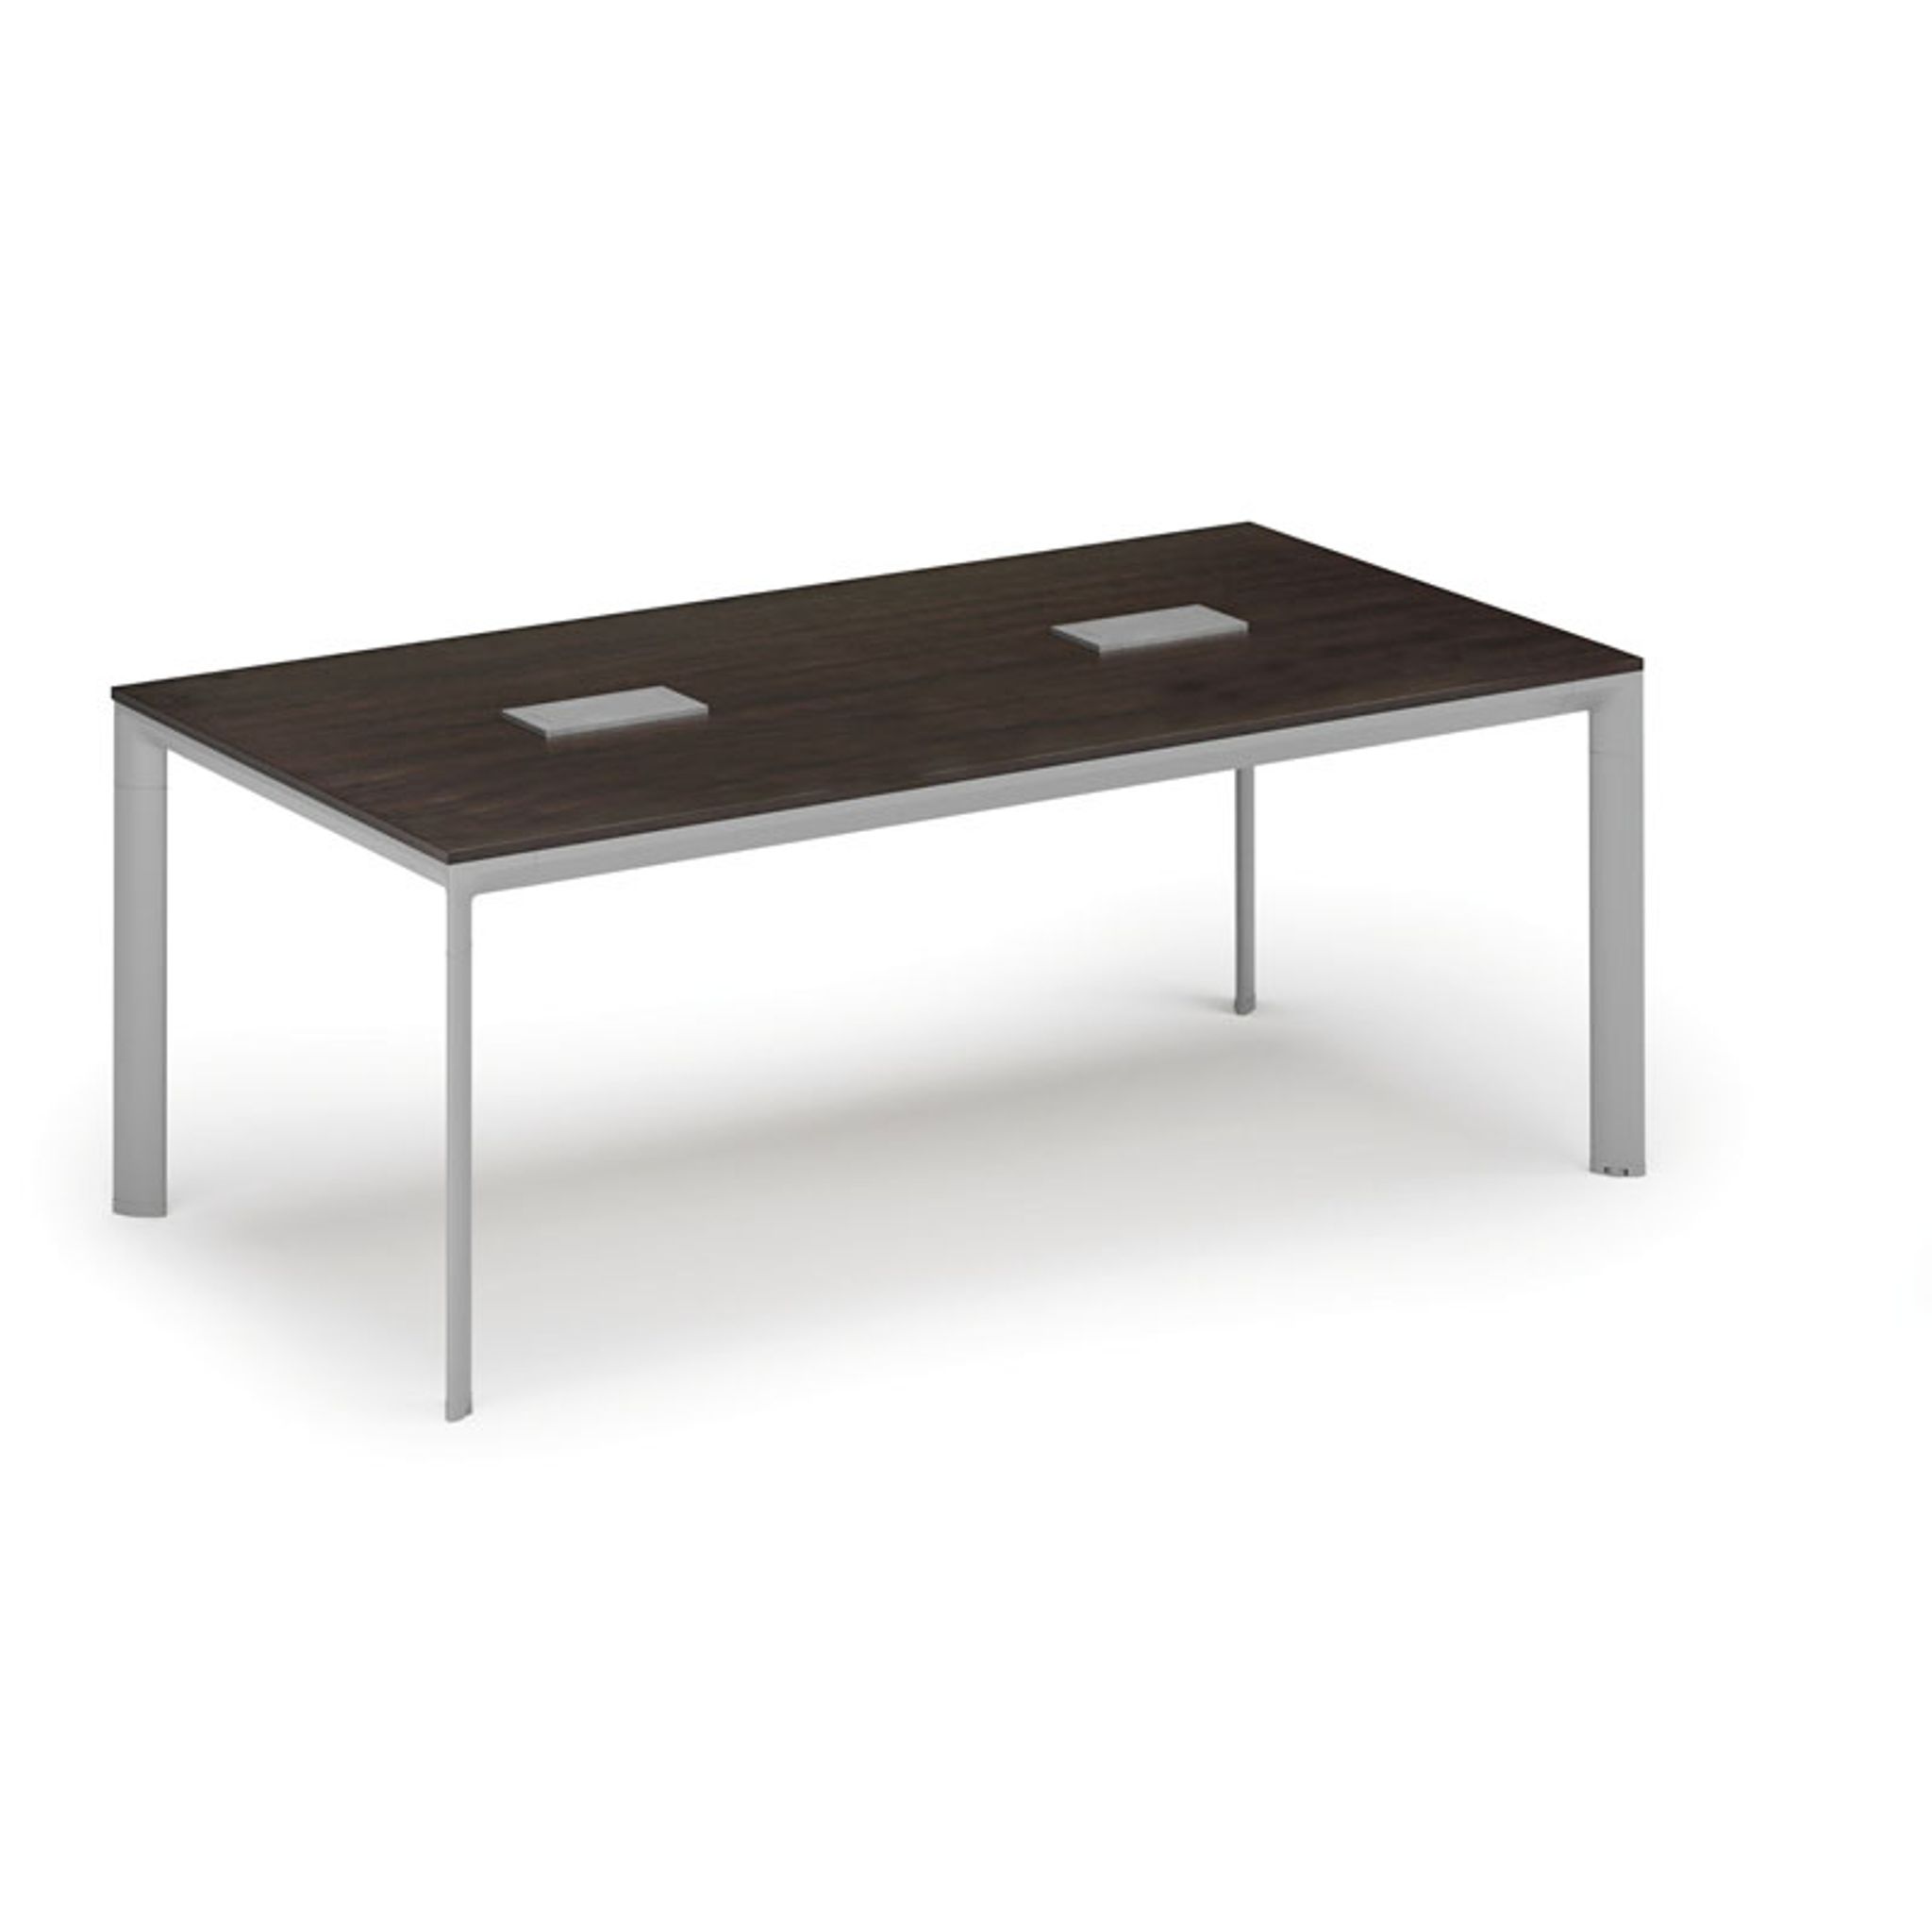 Stůl INVITATION 2000 x 1000 x 740, wenge + 2x stolní zásuvka TYP III, stříbrná